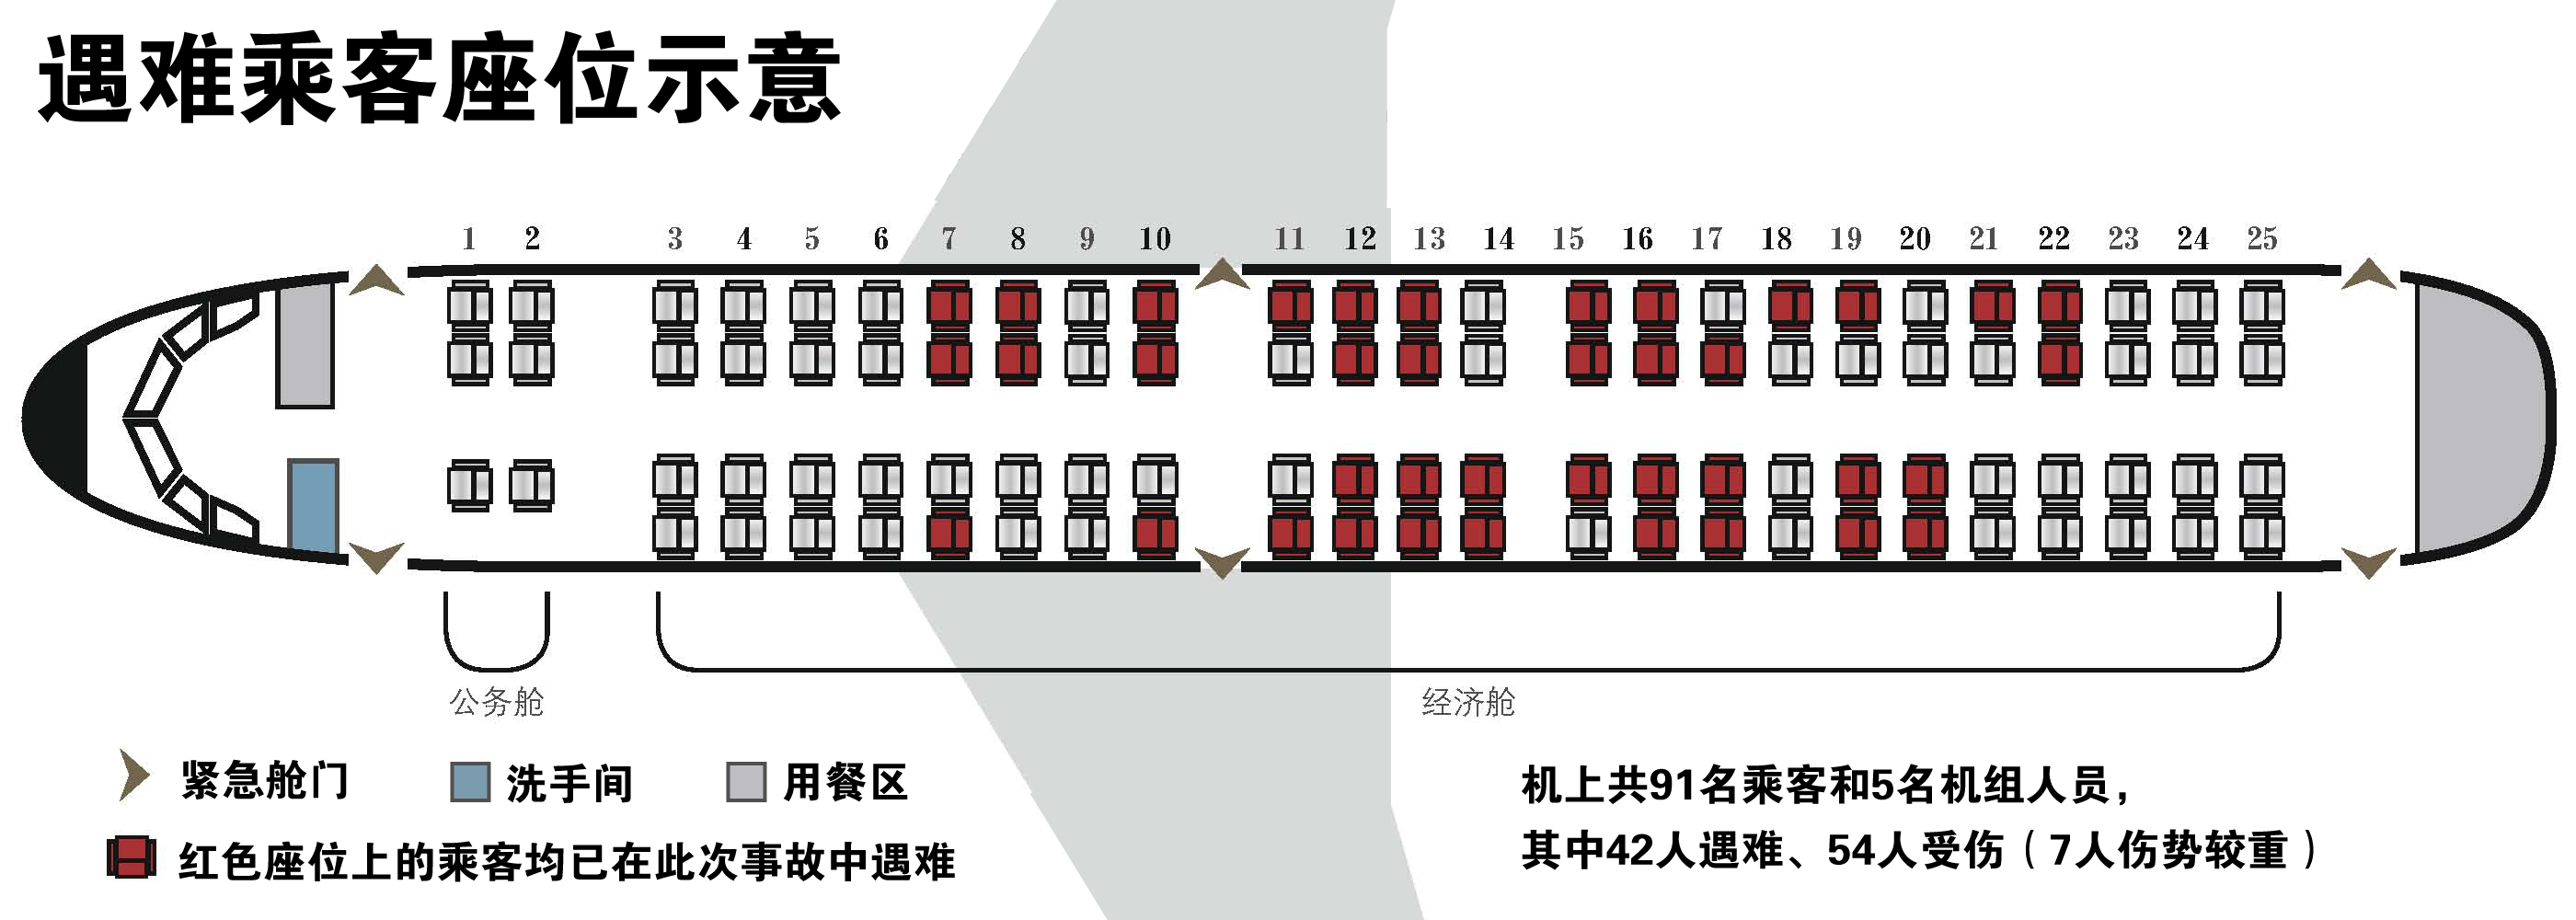 24排飞机座位图图片